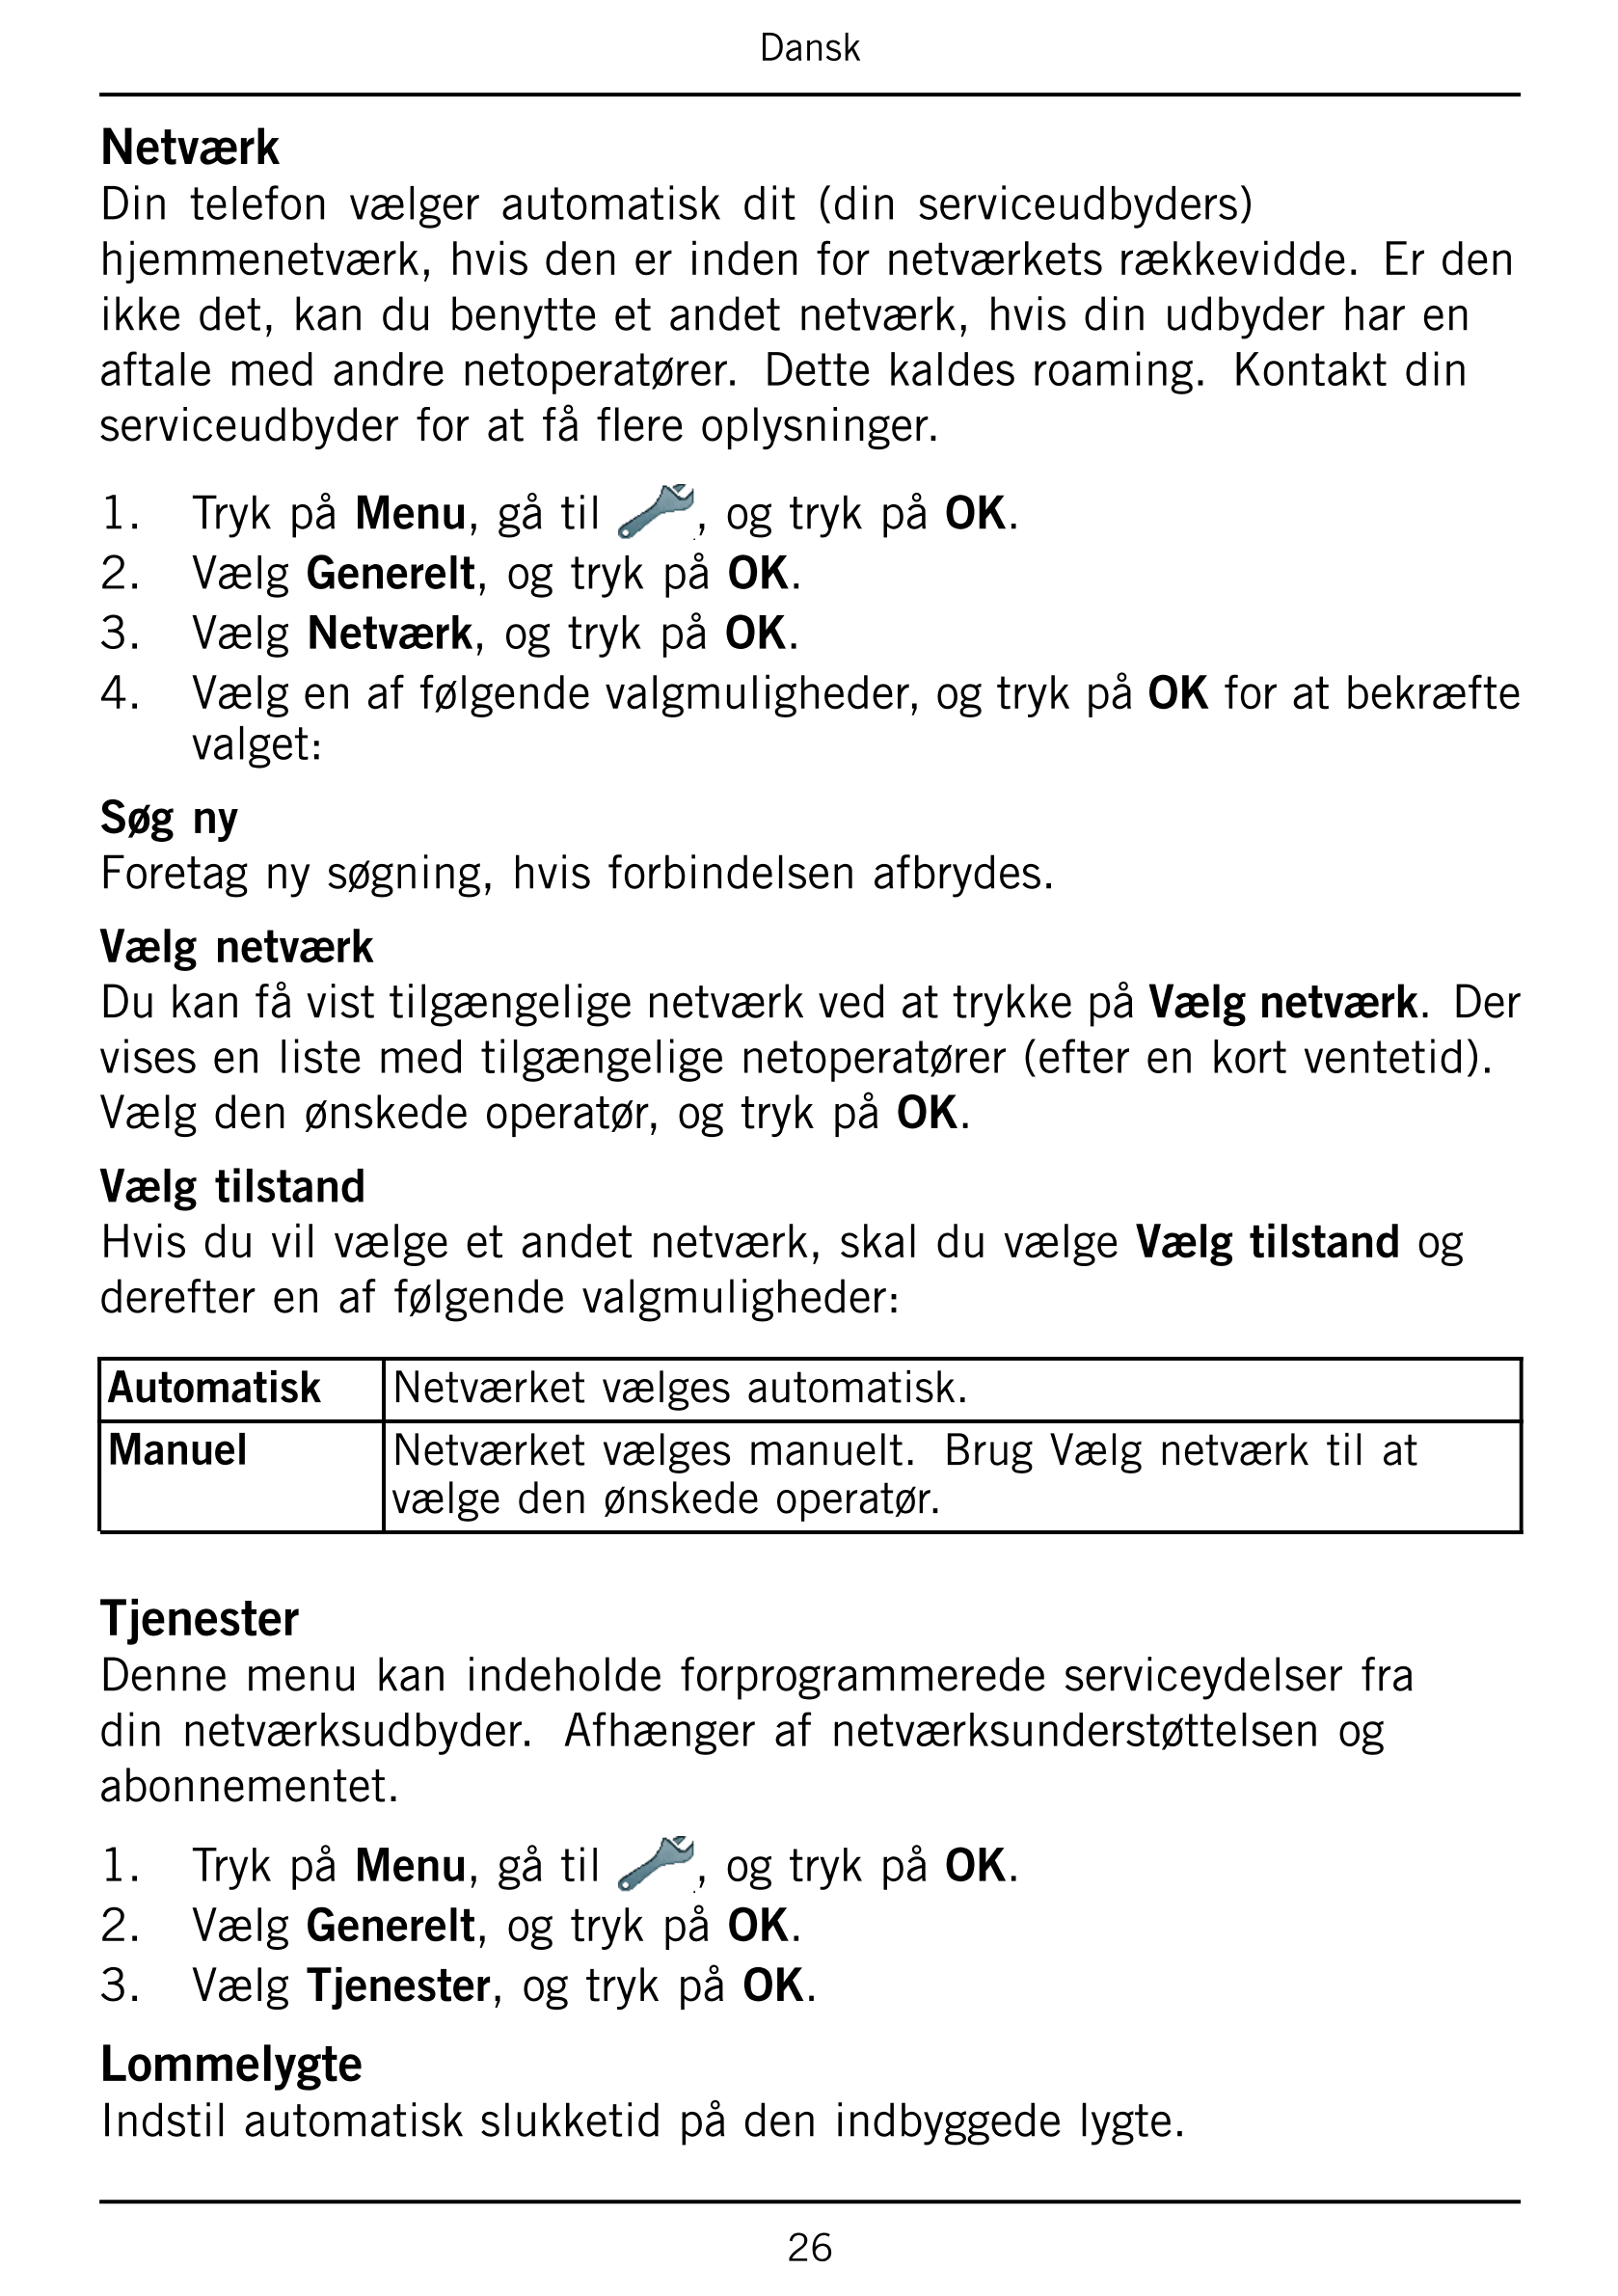 Dansk
Netværk
Din  telefon  vælger  automatisk  dit  (din  serviceudbyders)
hjemmenetværk, hvis den er inden for netværkets rækk